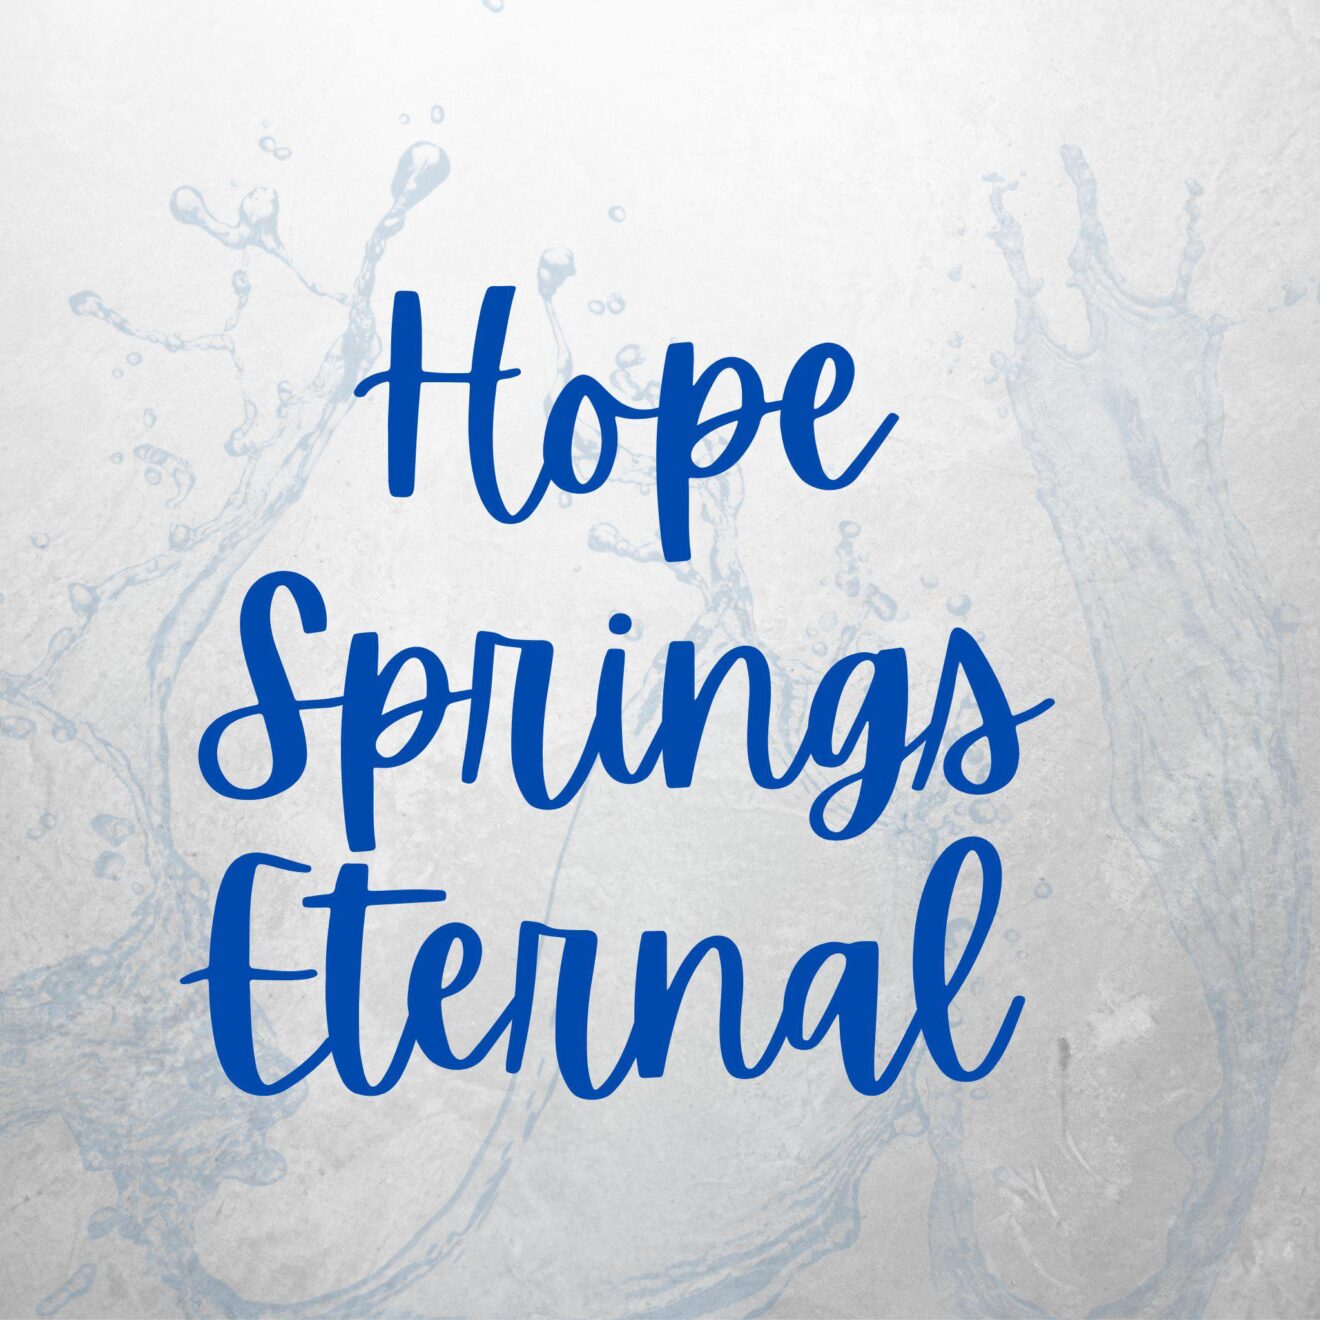 hope springs eternal